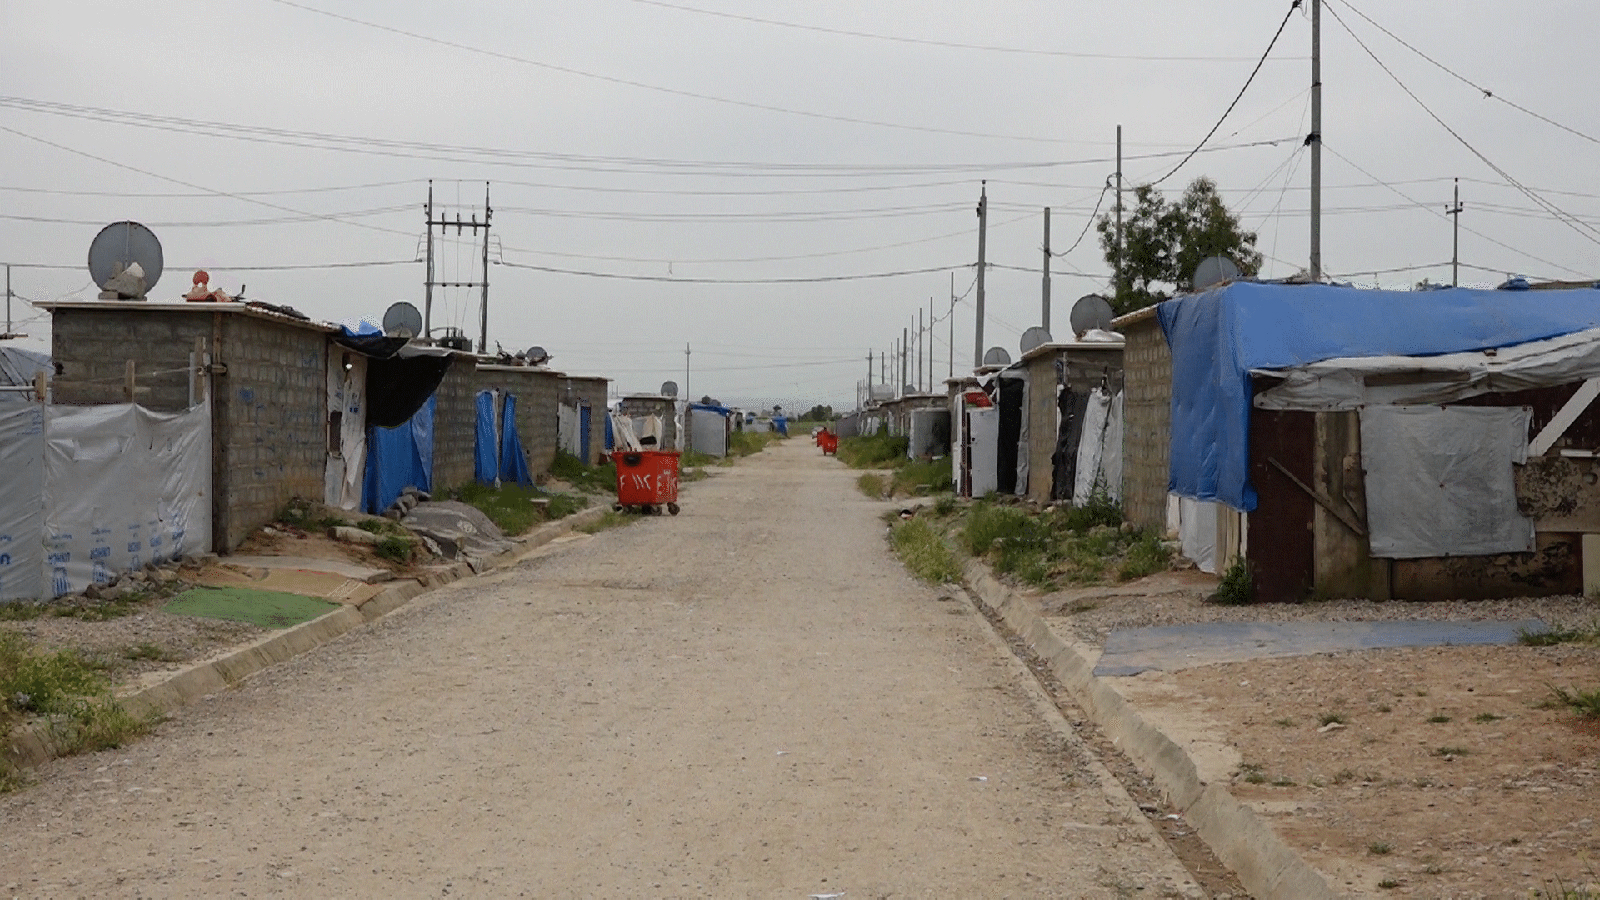  المخيمات لا توفر فرص عمل ويعتمد قاطنوها على مساعدات المنظمات المحلية والدولية (الجزيرة نت)